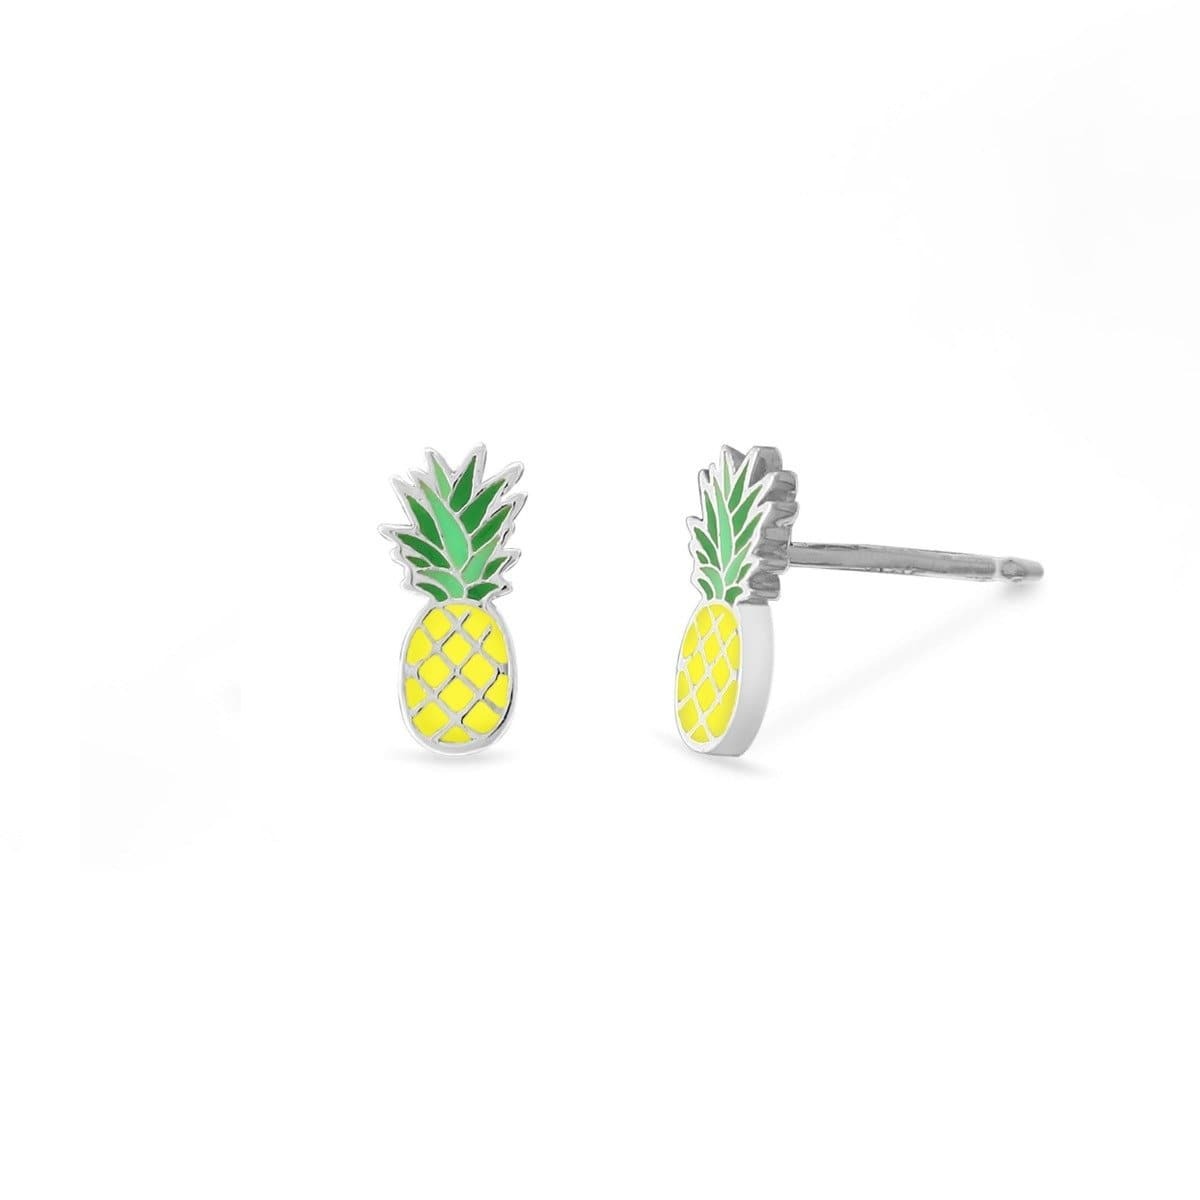 Boma Jewelry Earrings Pineapple Stud Earrings